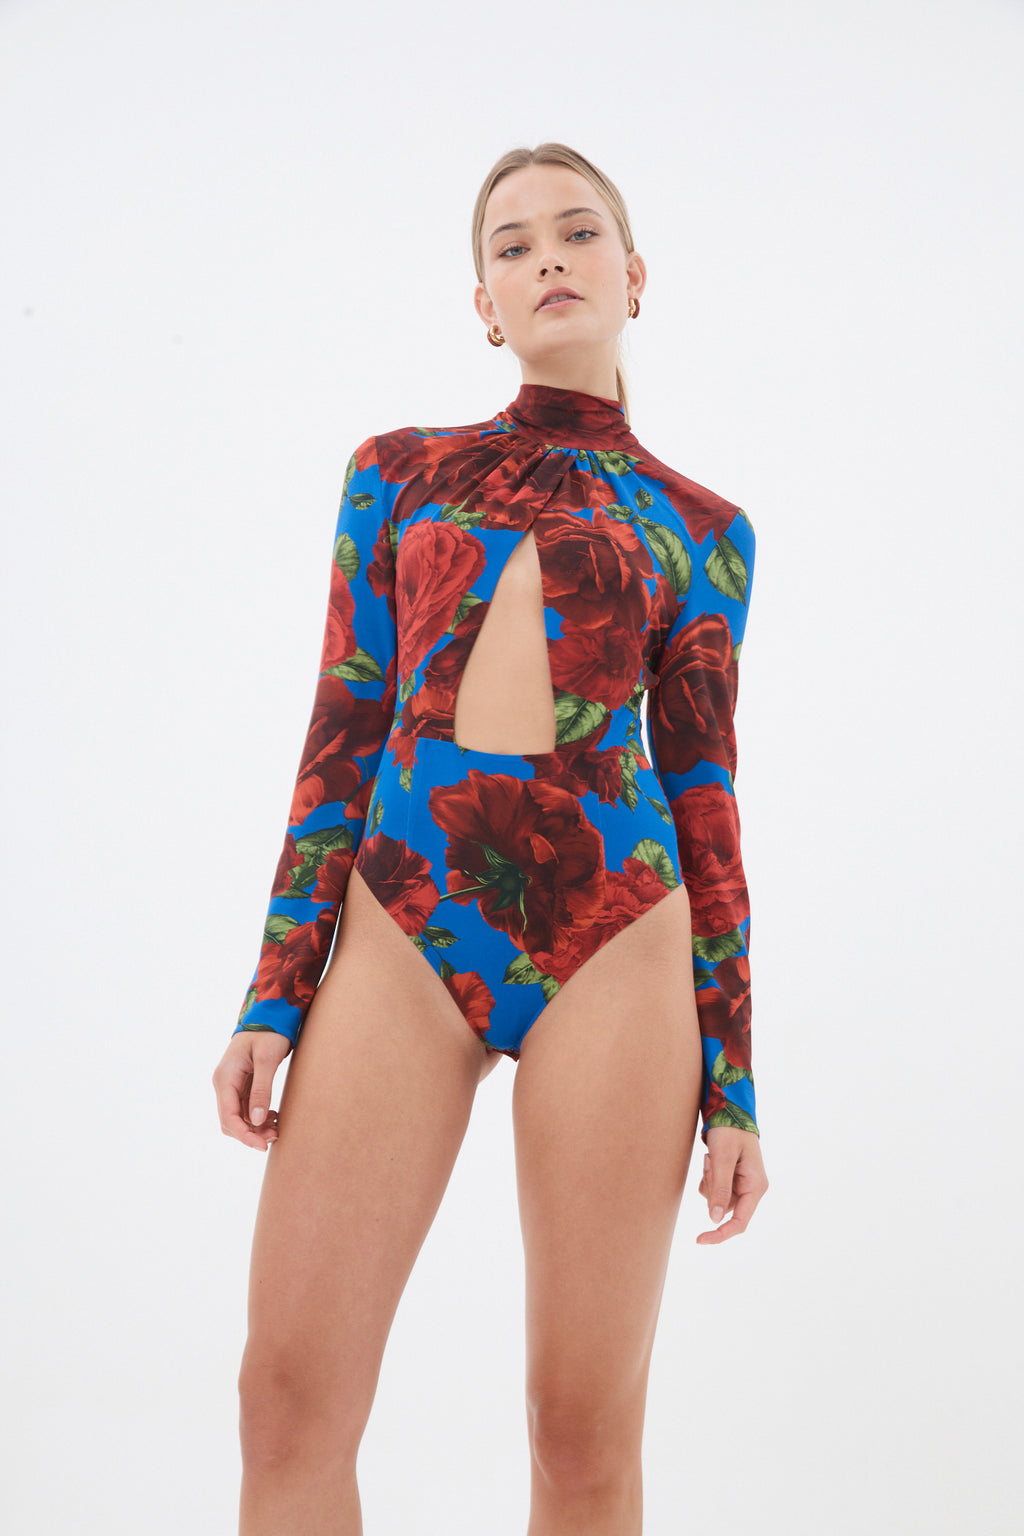 Turtleneck Blue Floral Print Cut Out Bodysuit